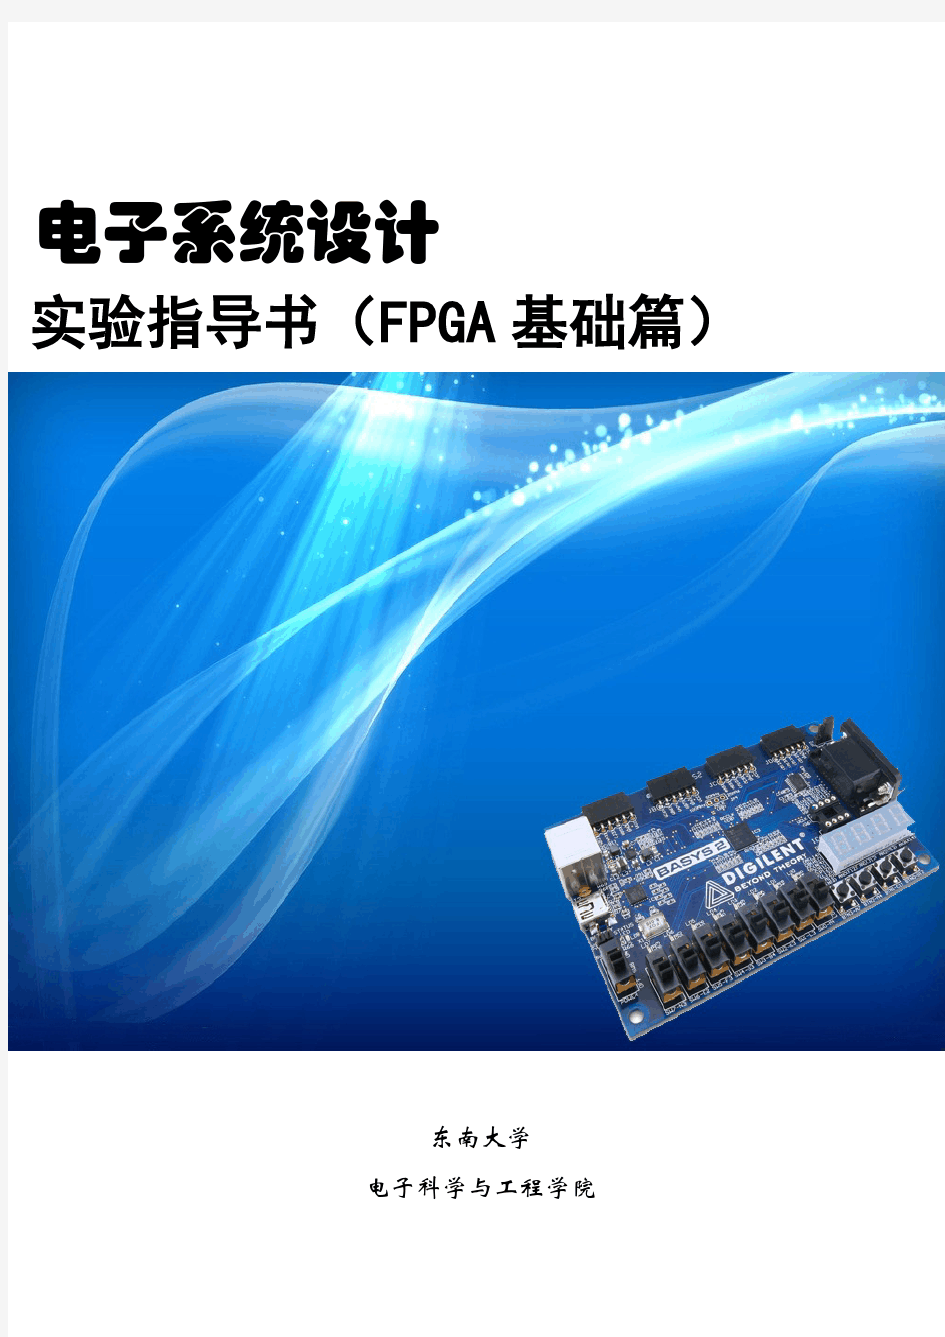 东南大学 电子系统设计实验指导书(FPGA基础篇)介绍